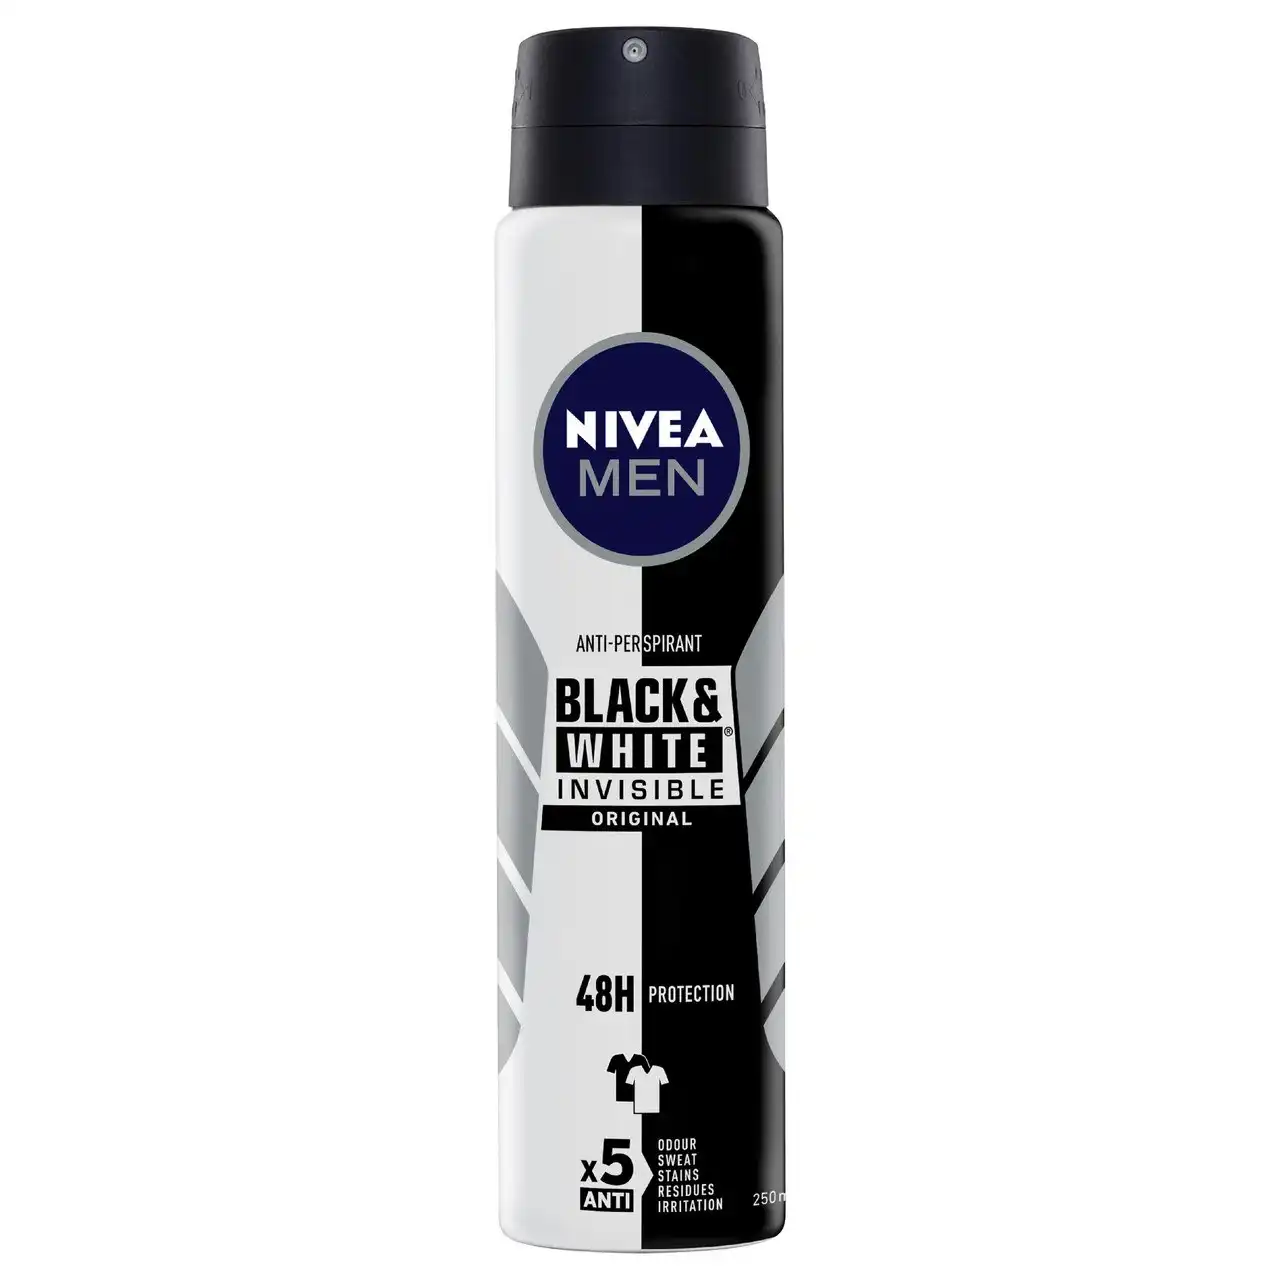 Nivea MEN Black & White Invisible Original Anti-perspirant Aerosol Deodorant 250mL